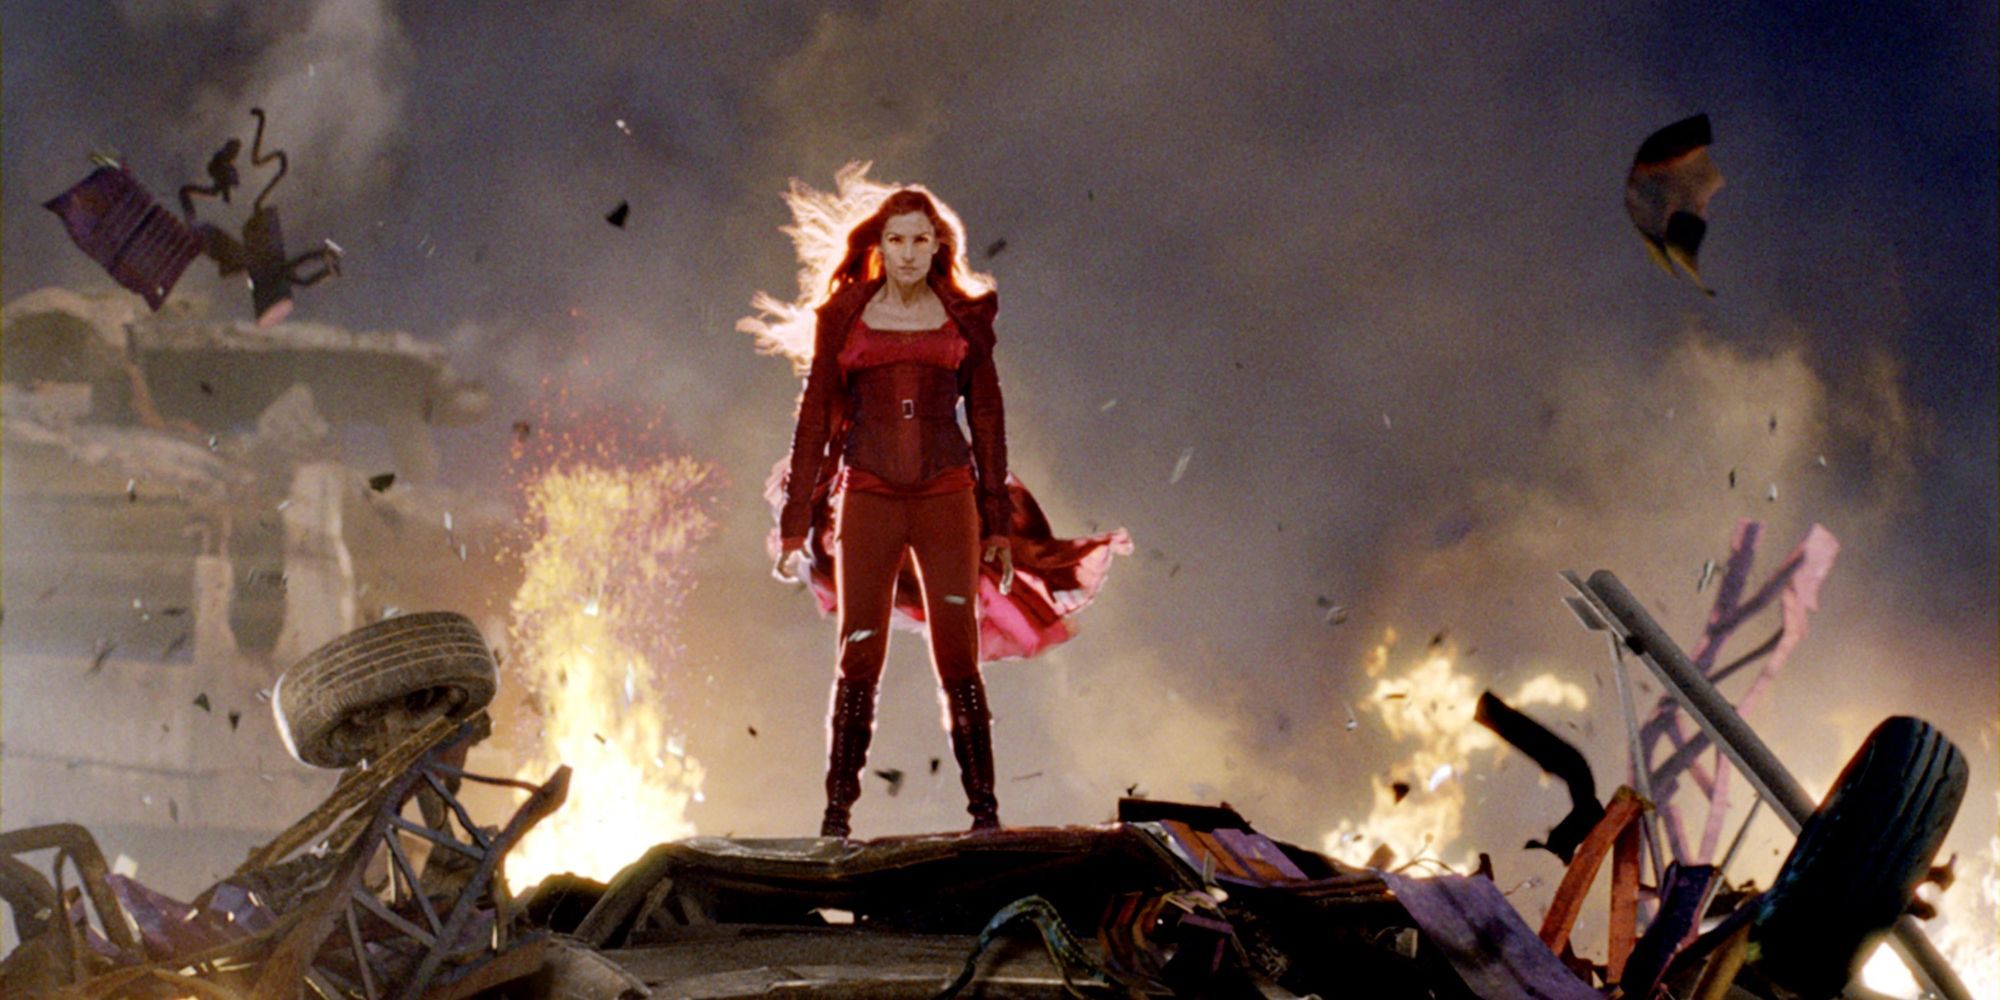 Famke Janssen as Jean Grey using her powers in X-Men: The Last Stand